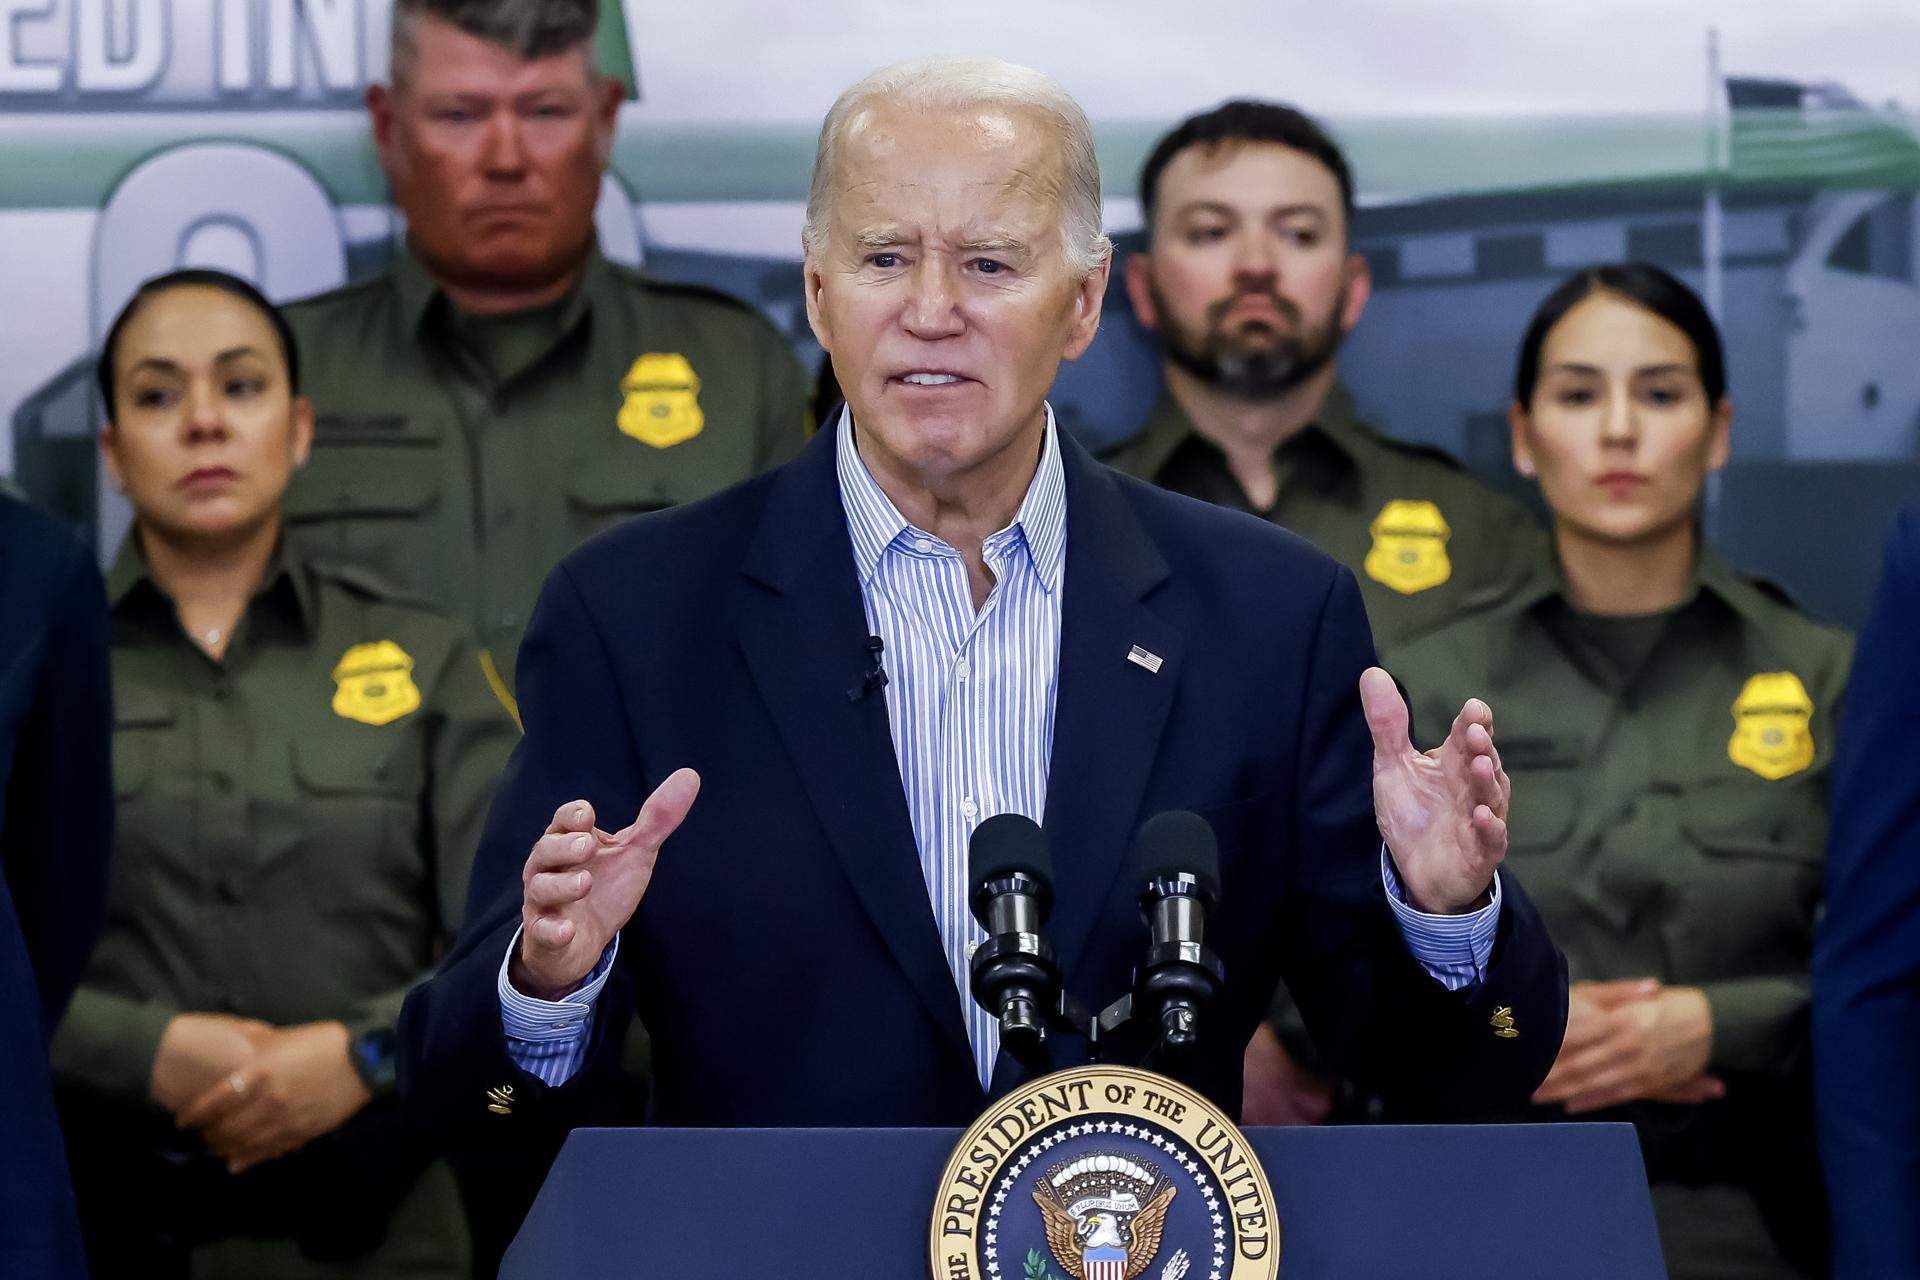 Biden i Trump visiten la frontera amb Mèxic i fixen la crisi migratòria com a eix central de la campanya